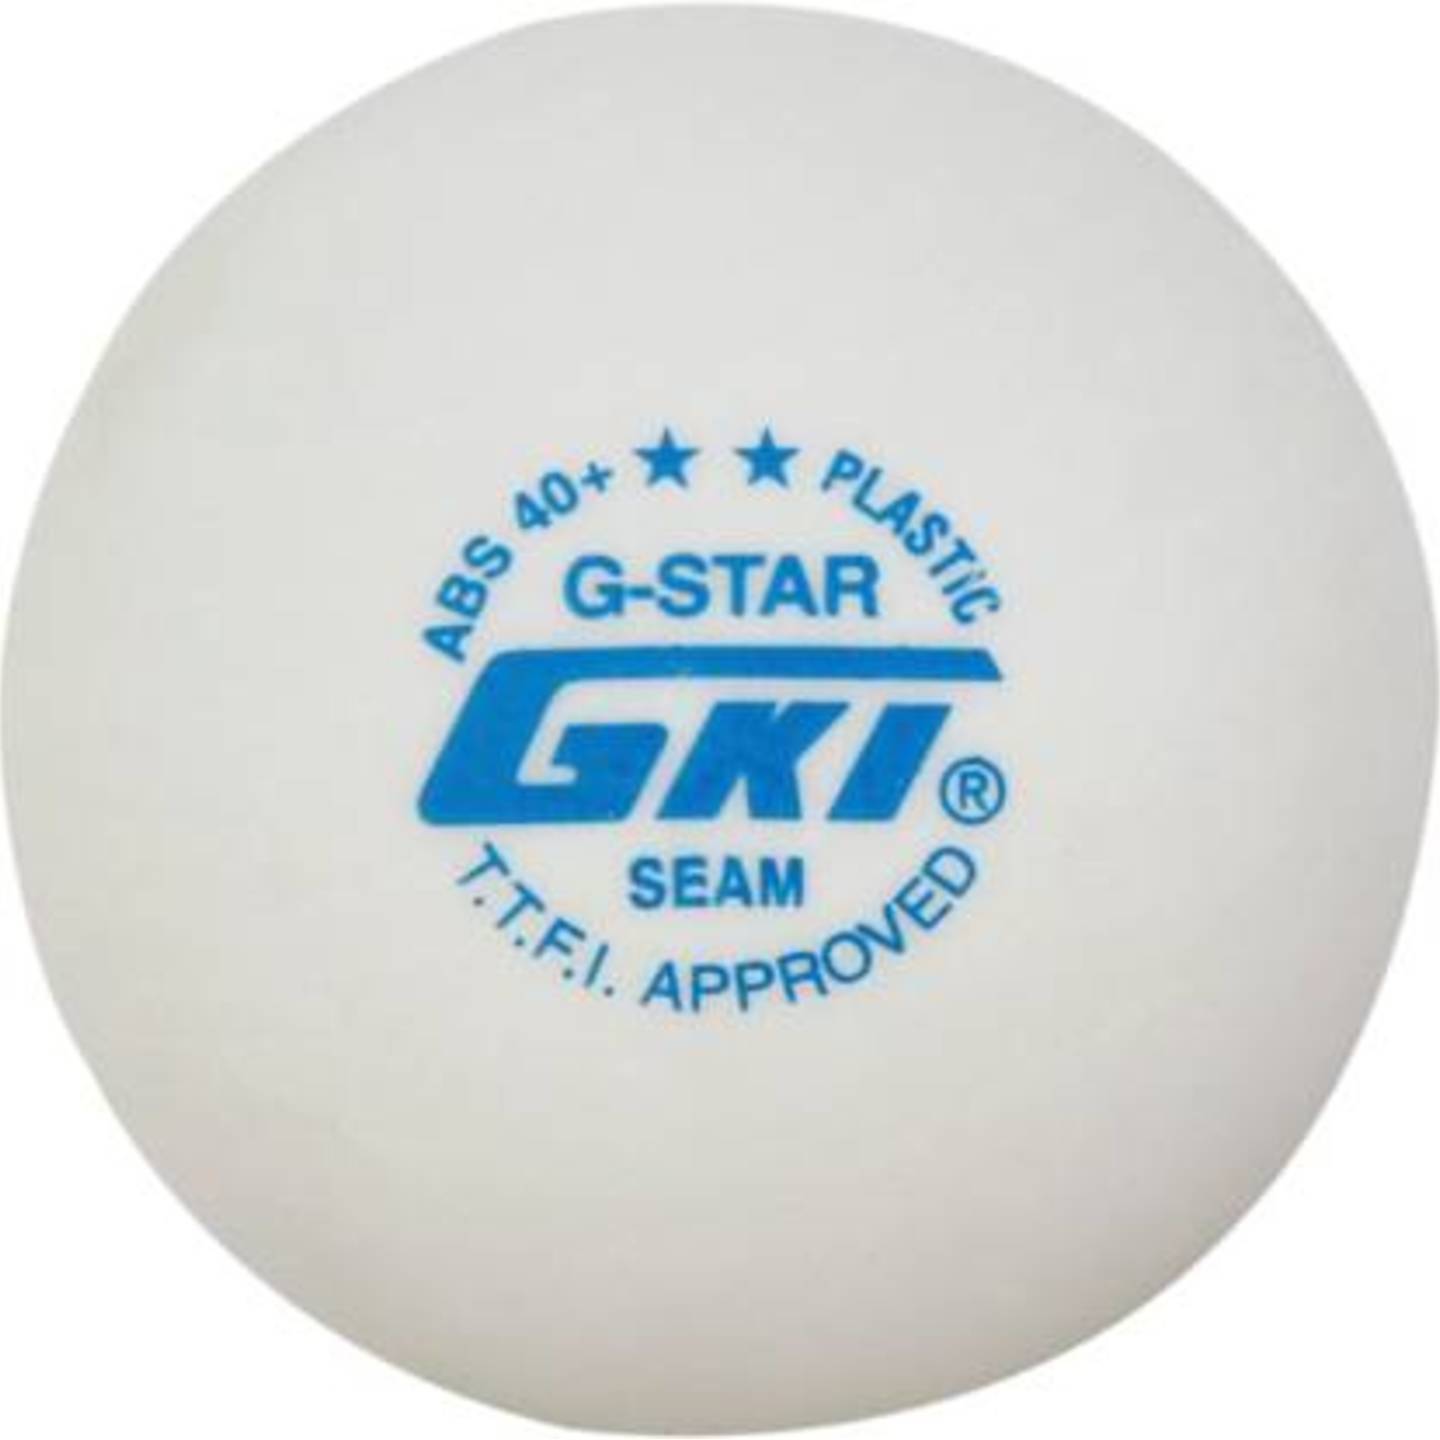 GKI 2 STAR G-STAR ABS PLASTIC TABLE TENNIS BALL